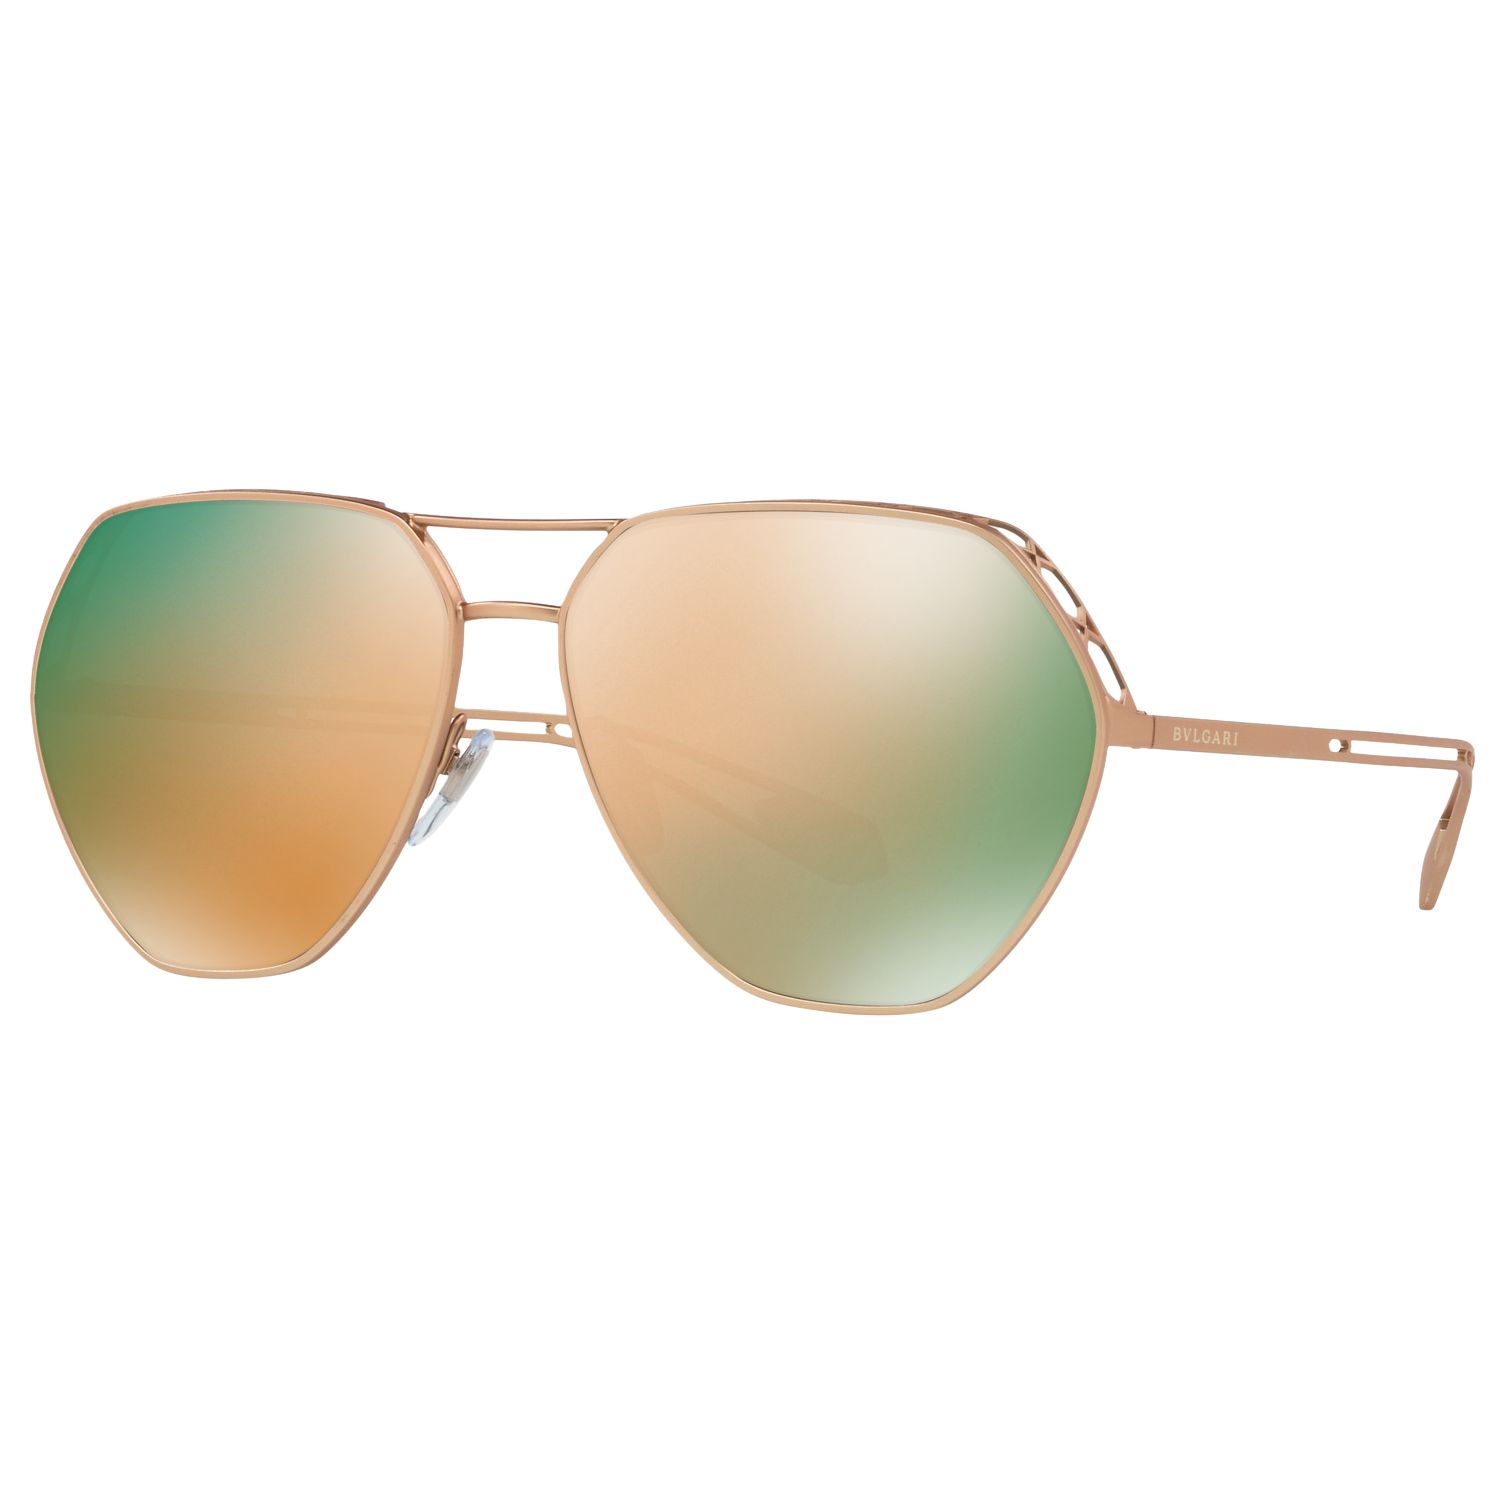 BVLGARI BV6098 Women's Aviator Sunglasses, Pink Gold/Grey